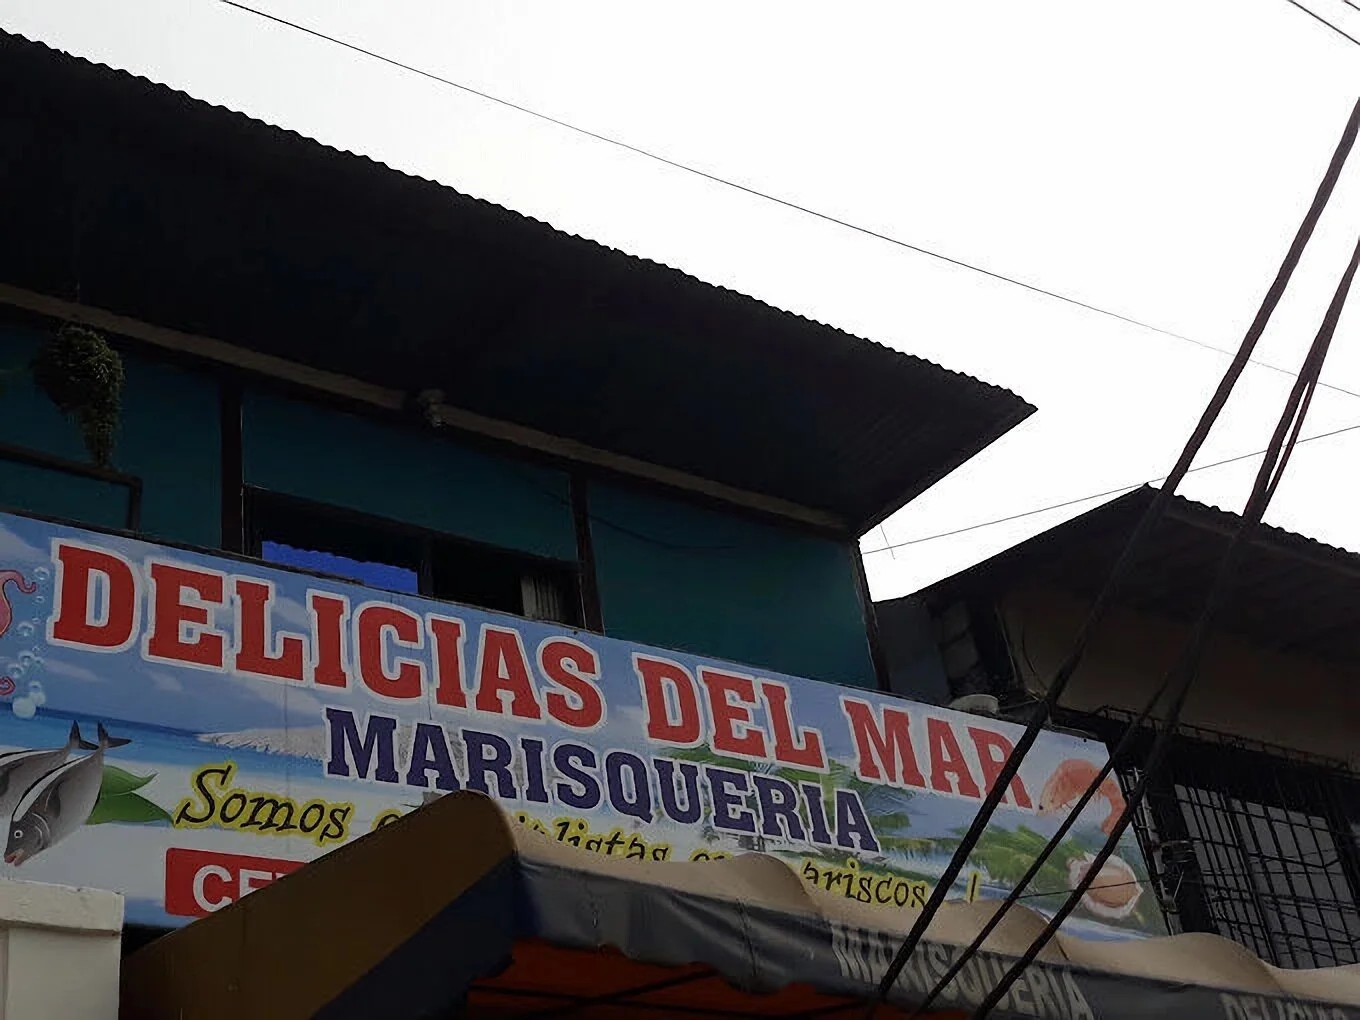 Restaurantes-marisqueria-las-delicias-del-mar-19858